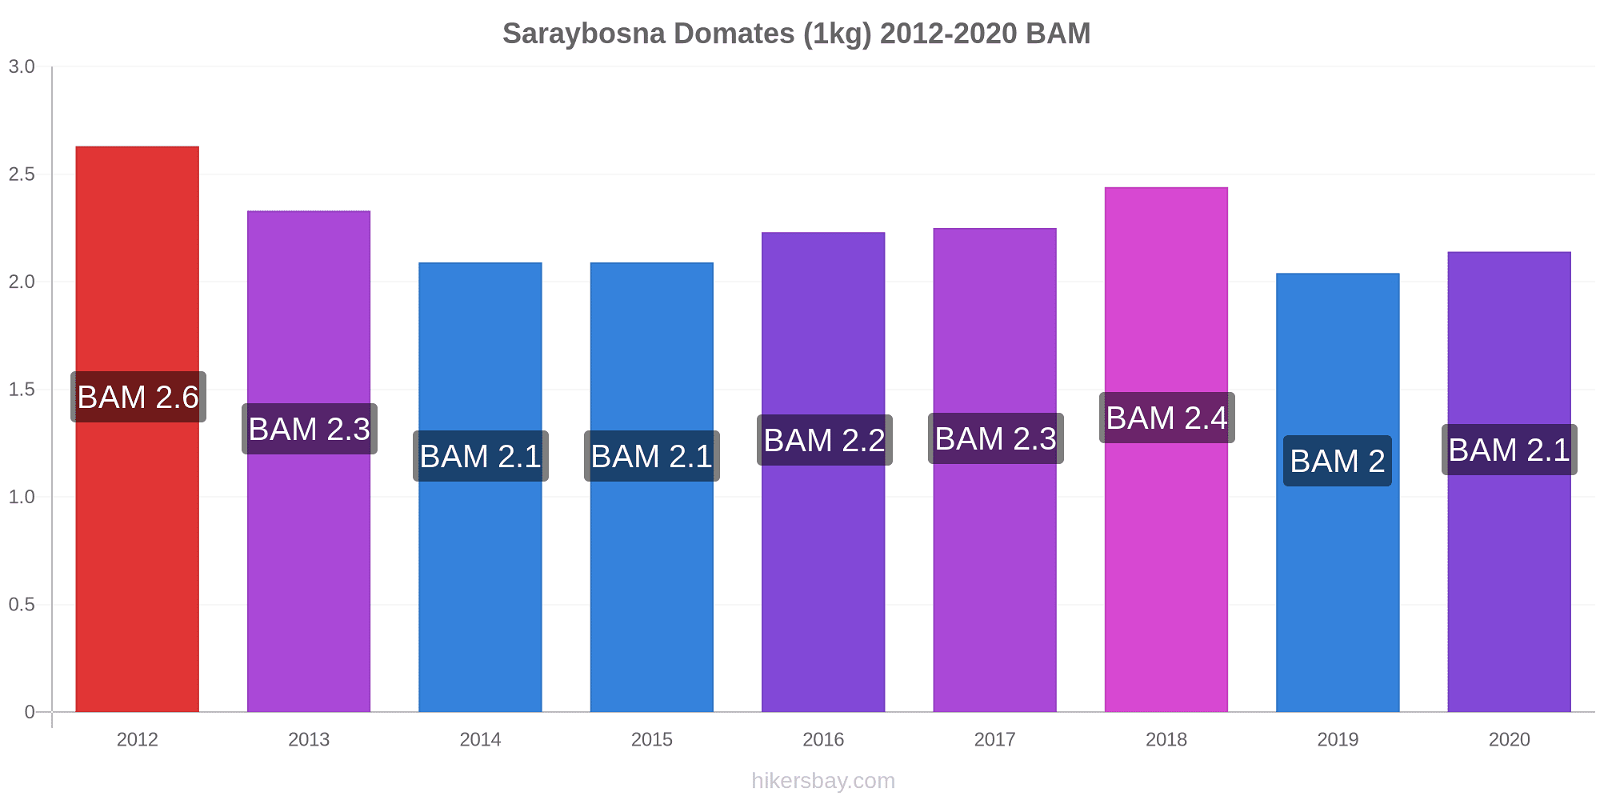 Saraybosna fiyat değişiklikleri Domates (1kg) hikersbay.com